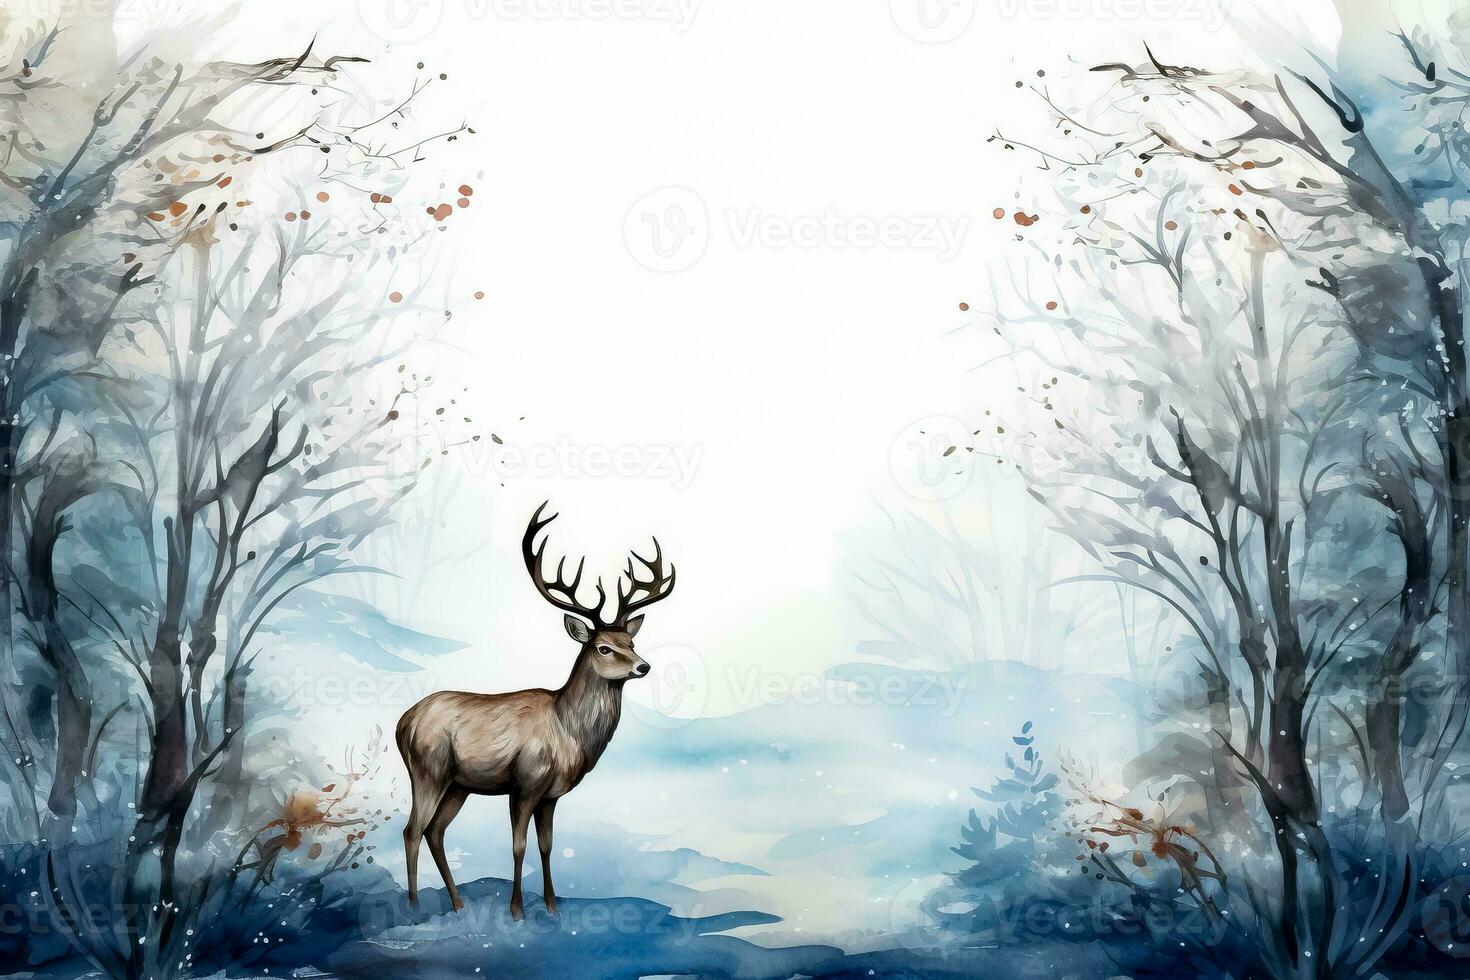 vinter- vilda djur och växter vattenfärg illustrationer jul tema bakgrund med tömma Plats för text foto